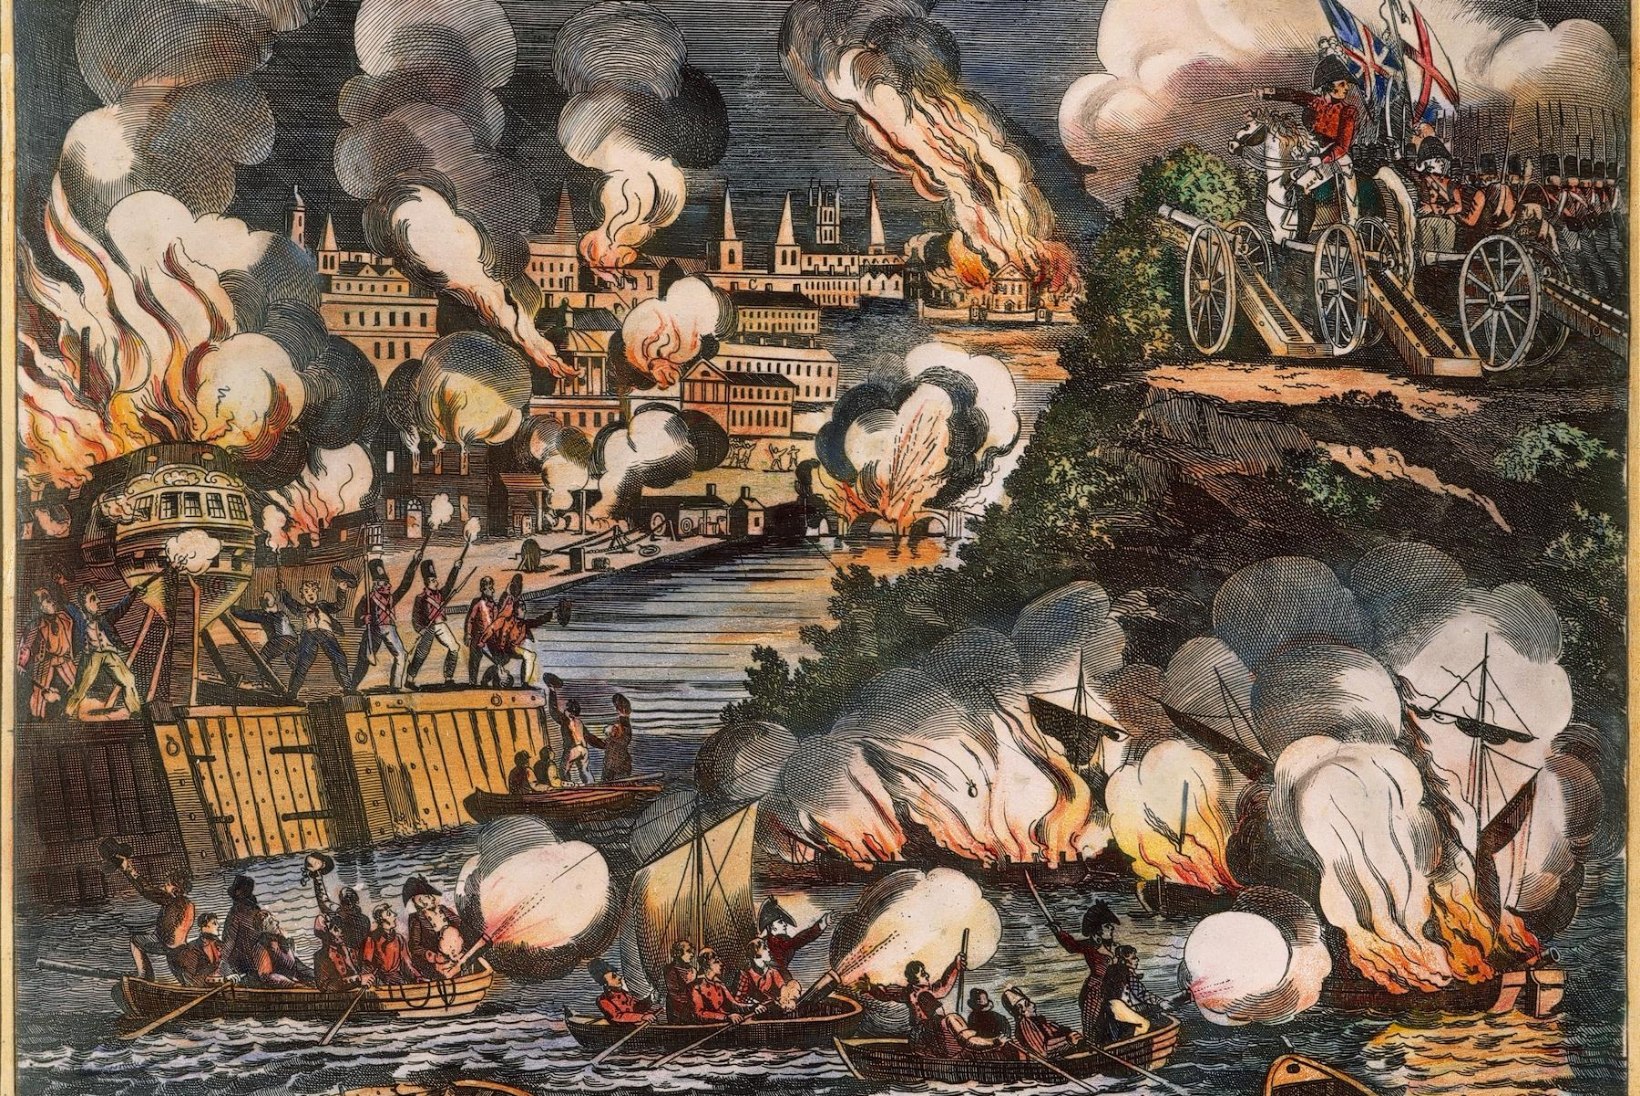  WASHINGTON PÕLEB! 1814. aastal põletasid linna maha inglased